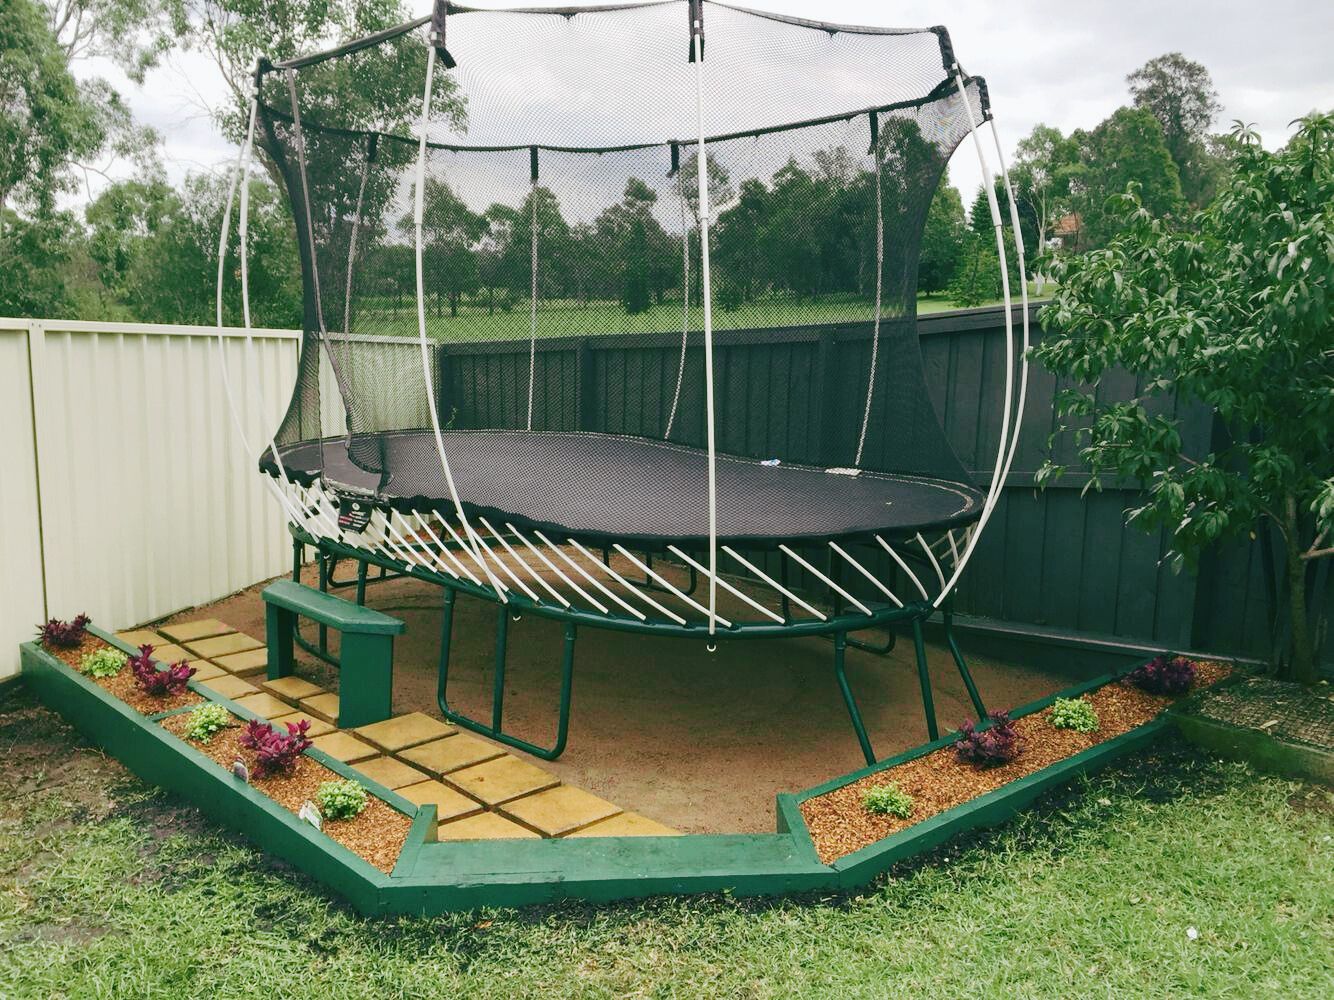 Trampoline in a backyard